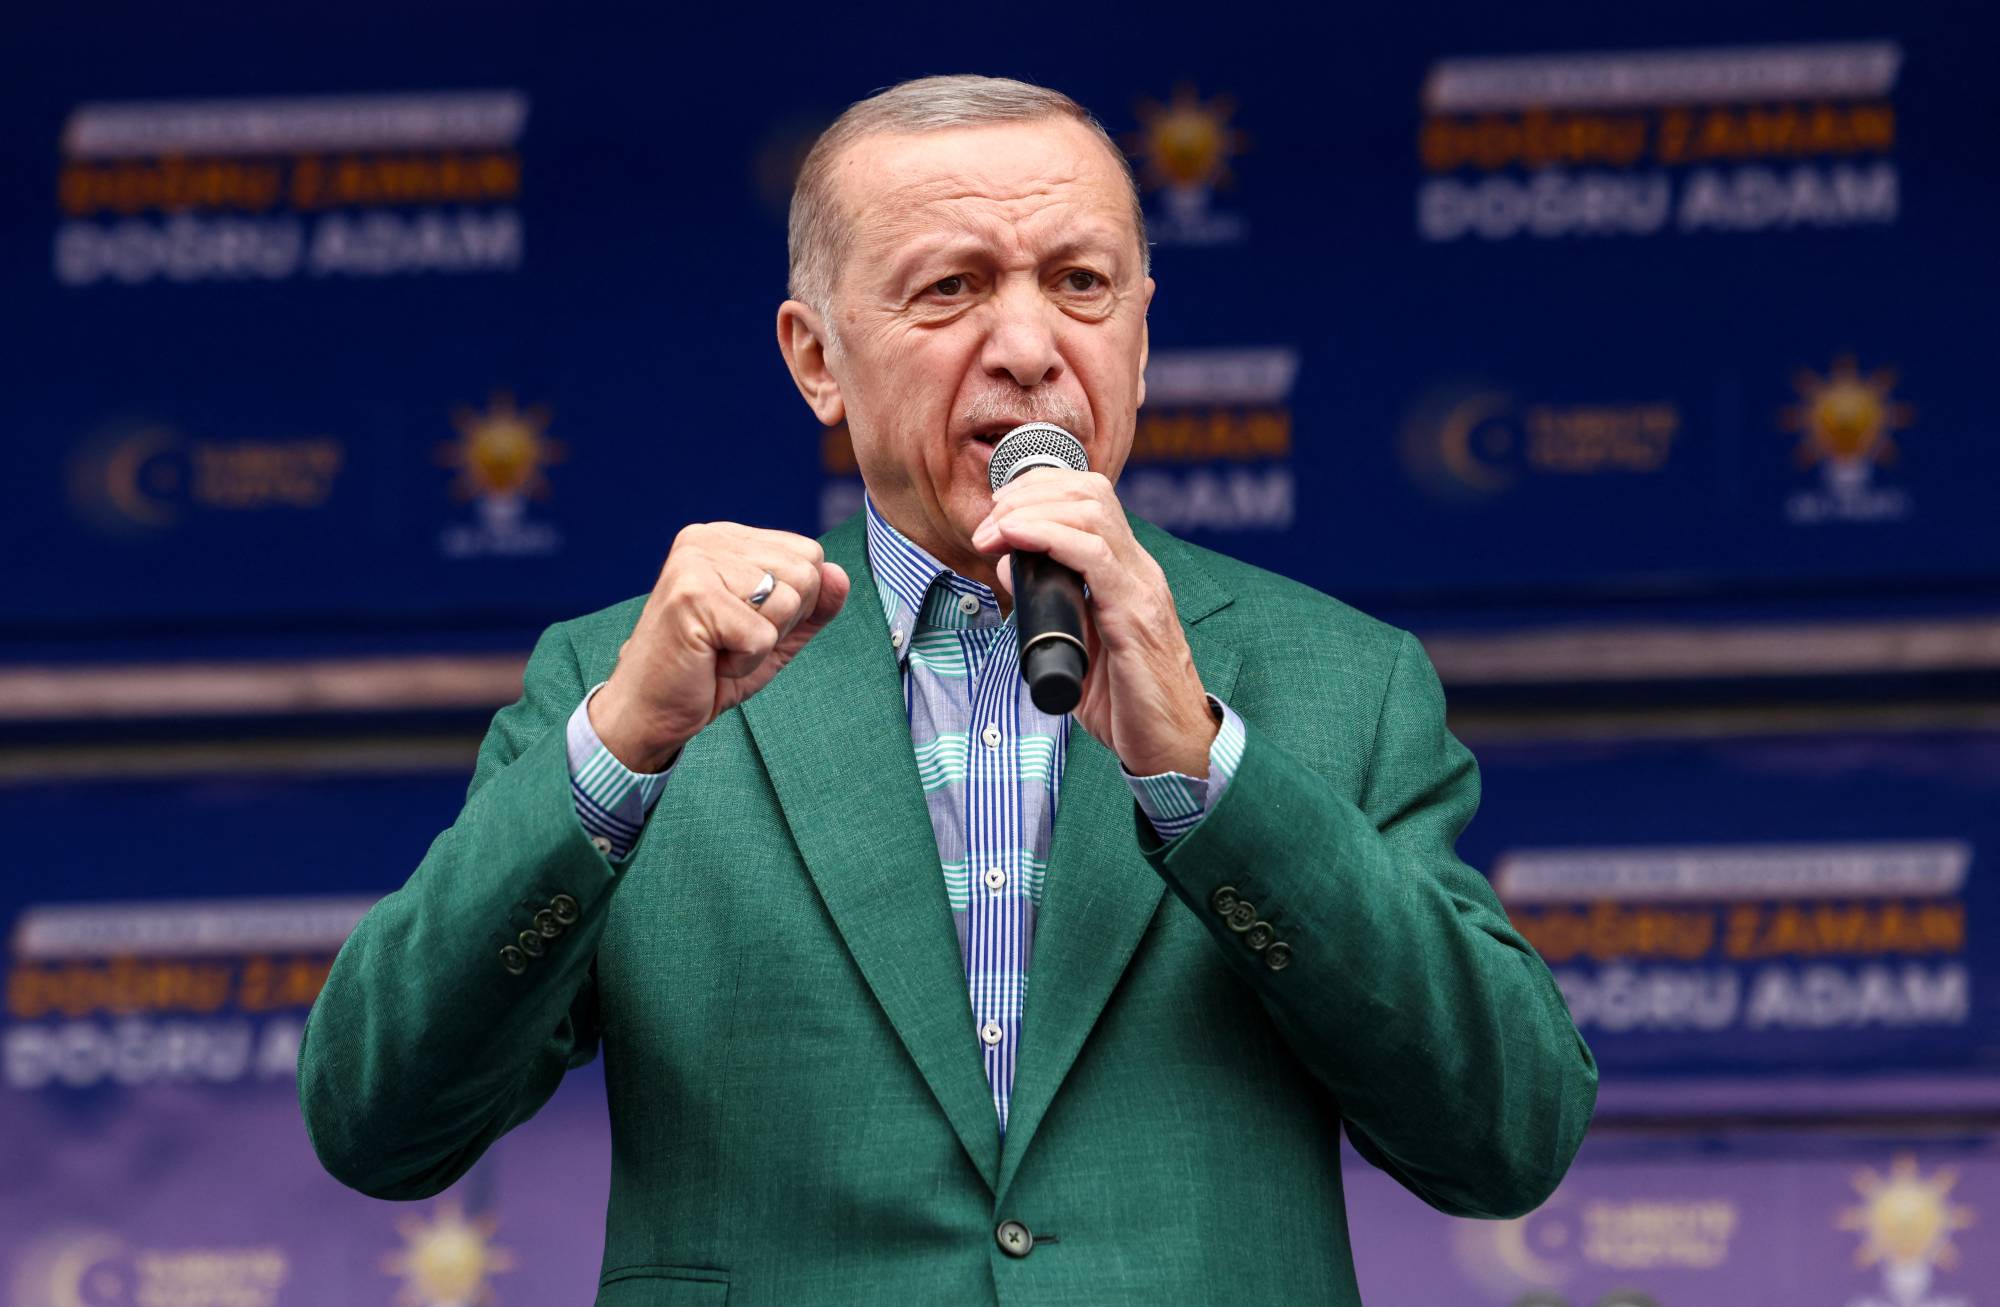 Cumhurbaşkanı Erdoğan Kapıyı Açtı! 41-42-43-44 Yaşında Erken Emeklilik Hakkı! Kimler Emekli Olabilir?